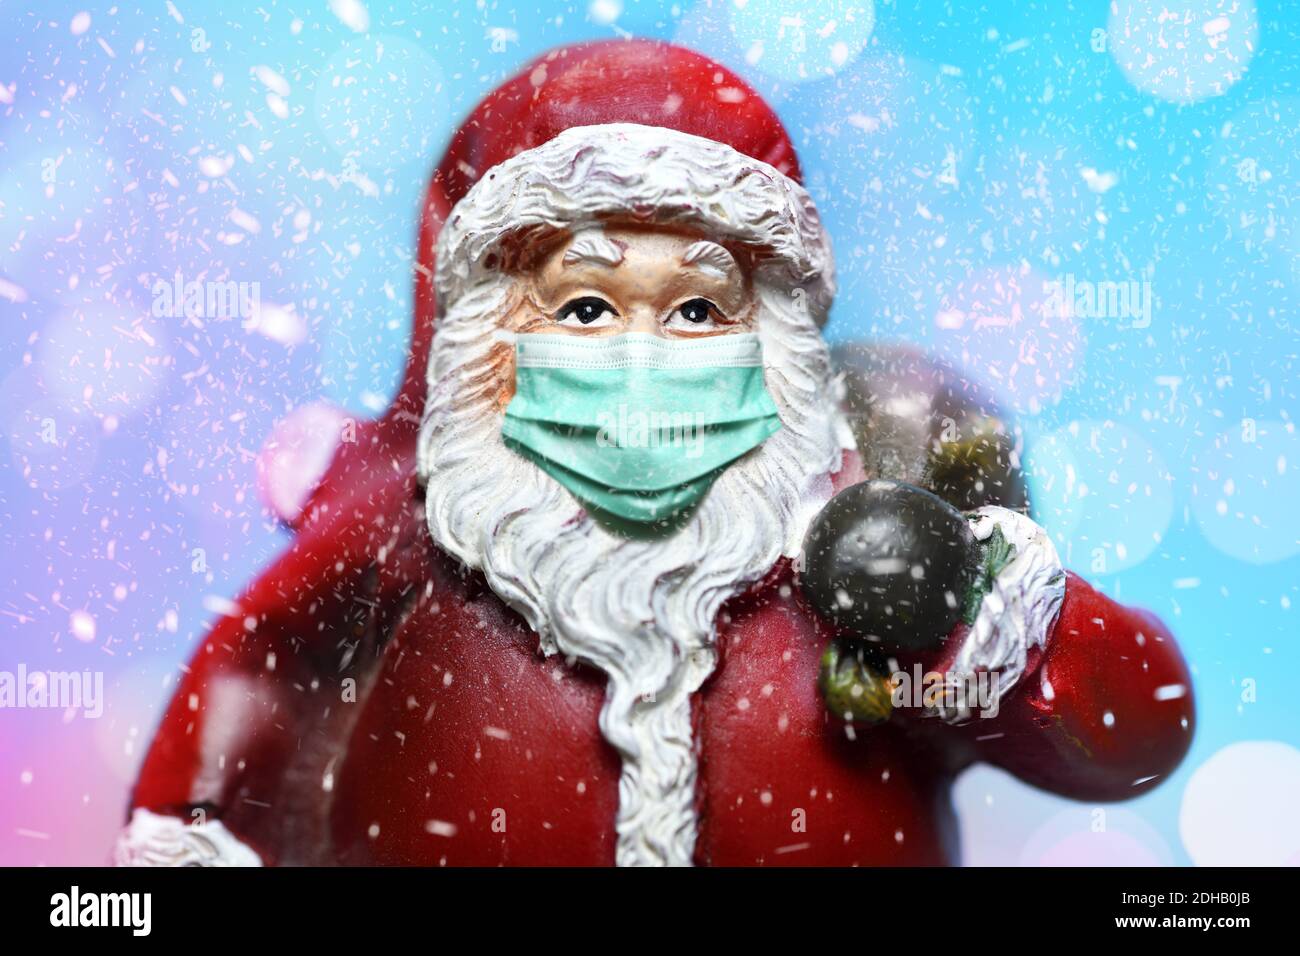 FOTOMONTAGE, Weihnachtsmann mit Schutzmaske, Weihnachtsfest zu Corona-Zeiten Stock Photo